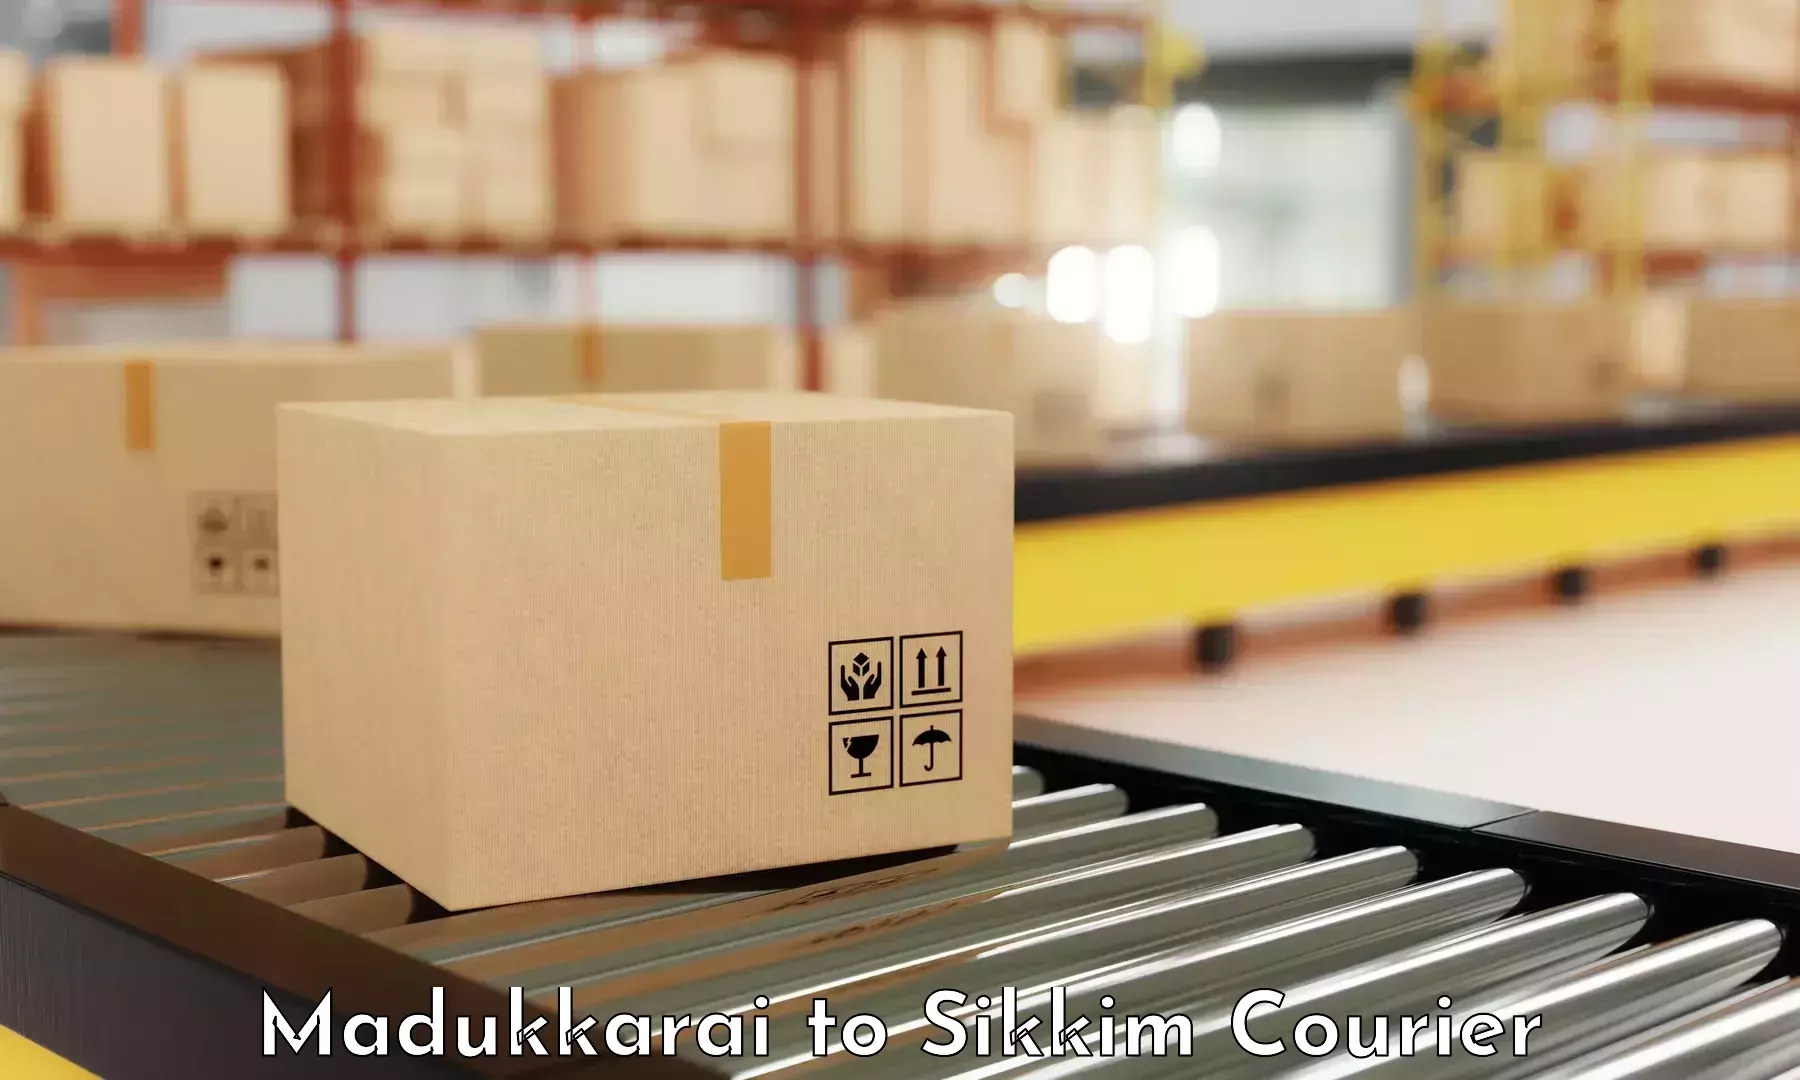 Courier service partnerships Madukkarai to Mangan